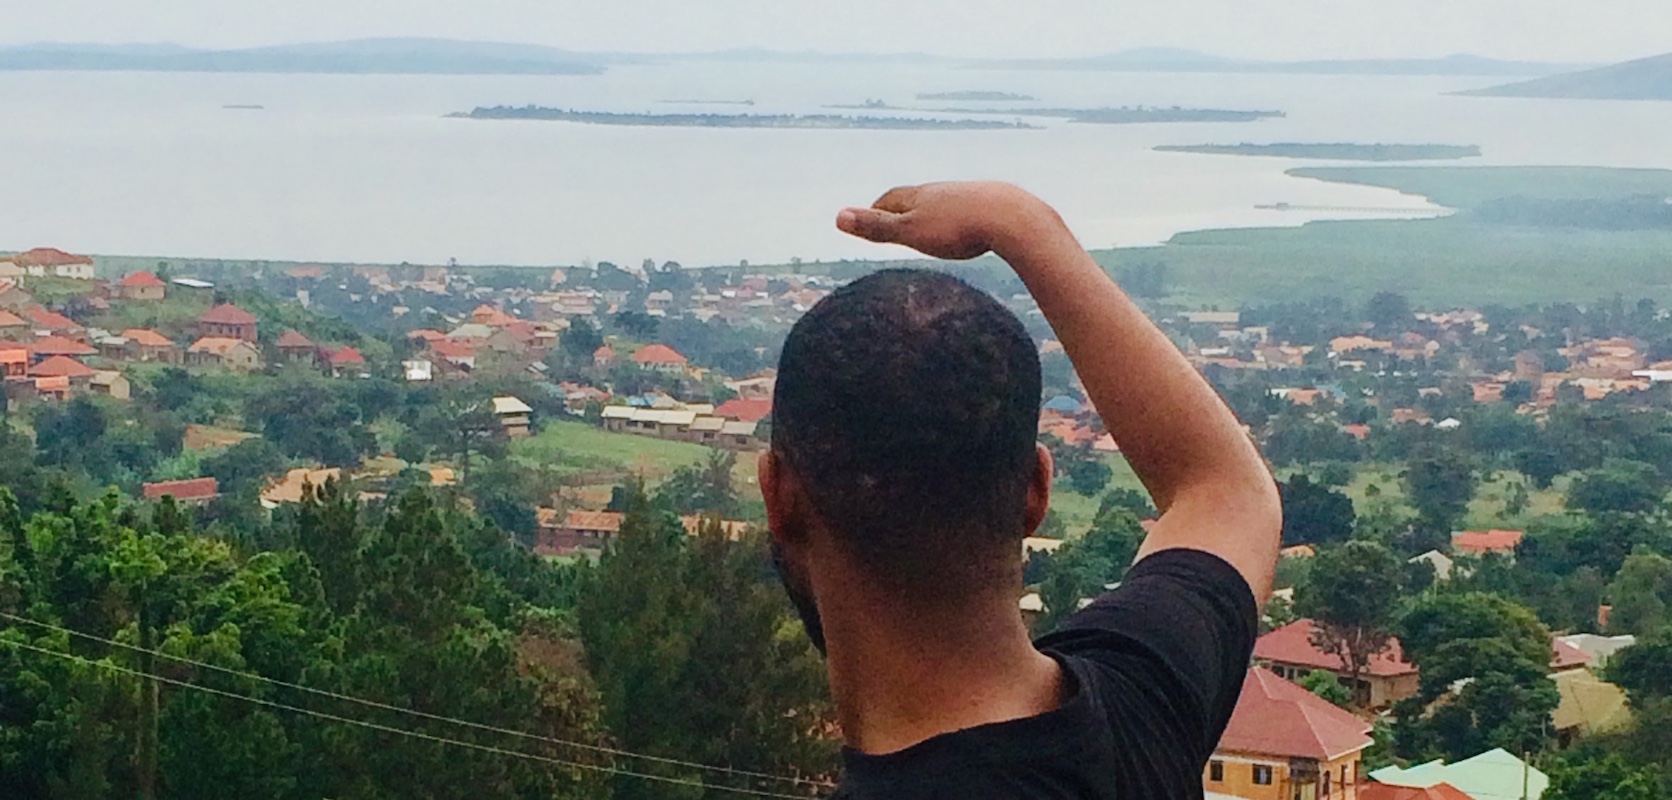 Student enjoys view of lake in Uganda